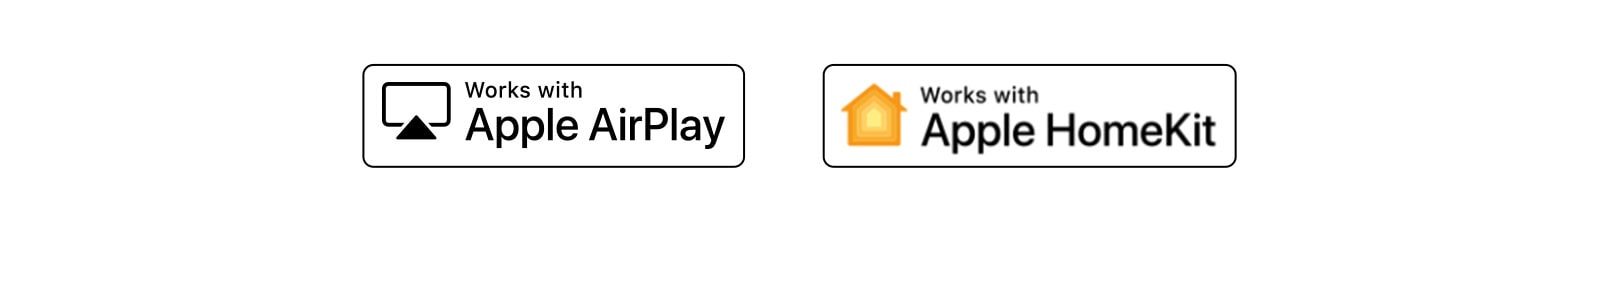 Có bốn logo được đặt theo thứ tự - Hey Google, alexa tích hợp, Làm việc với Apple AirPlay, Làm việc với Apple HomeKit. 